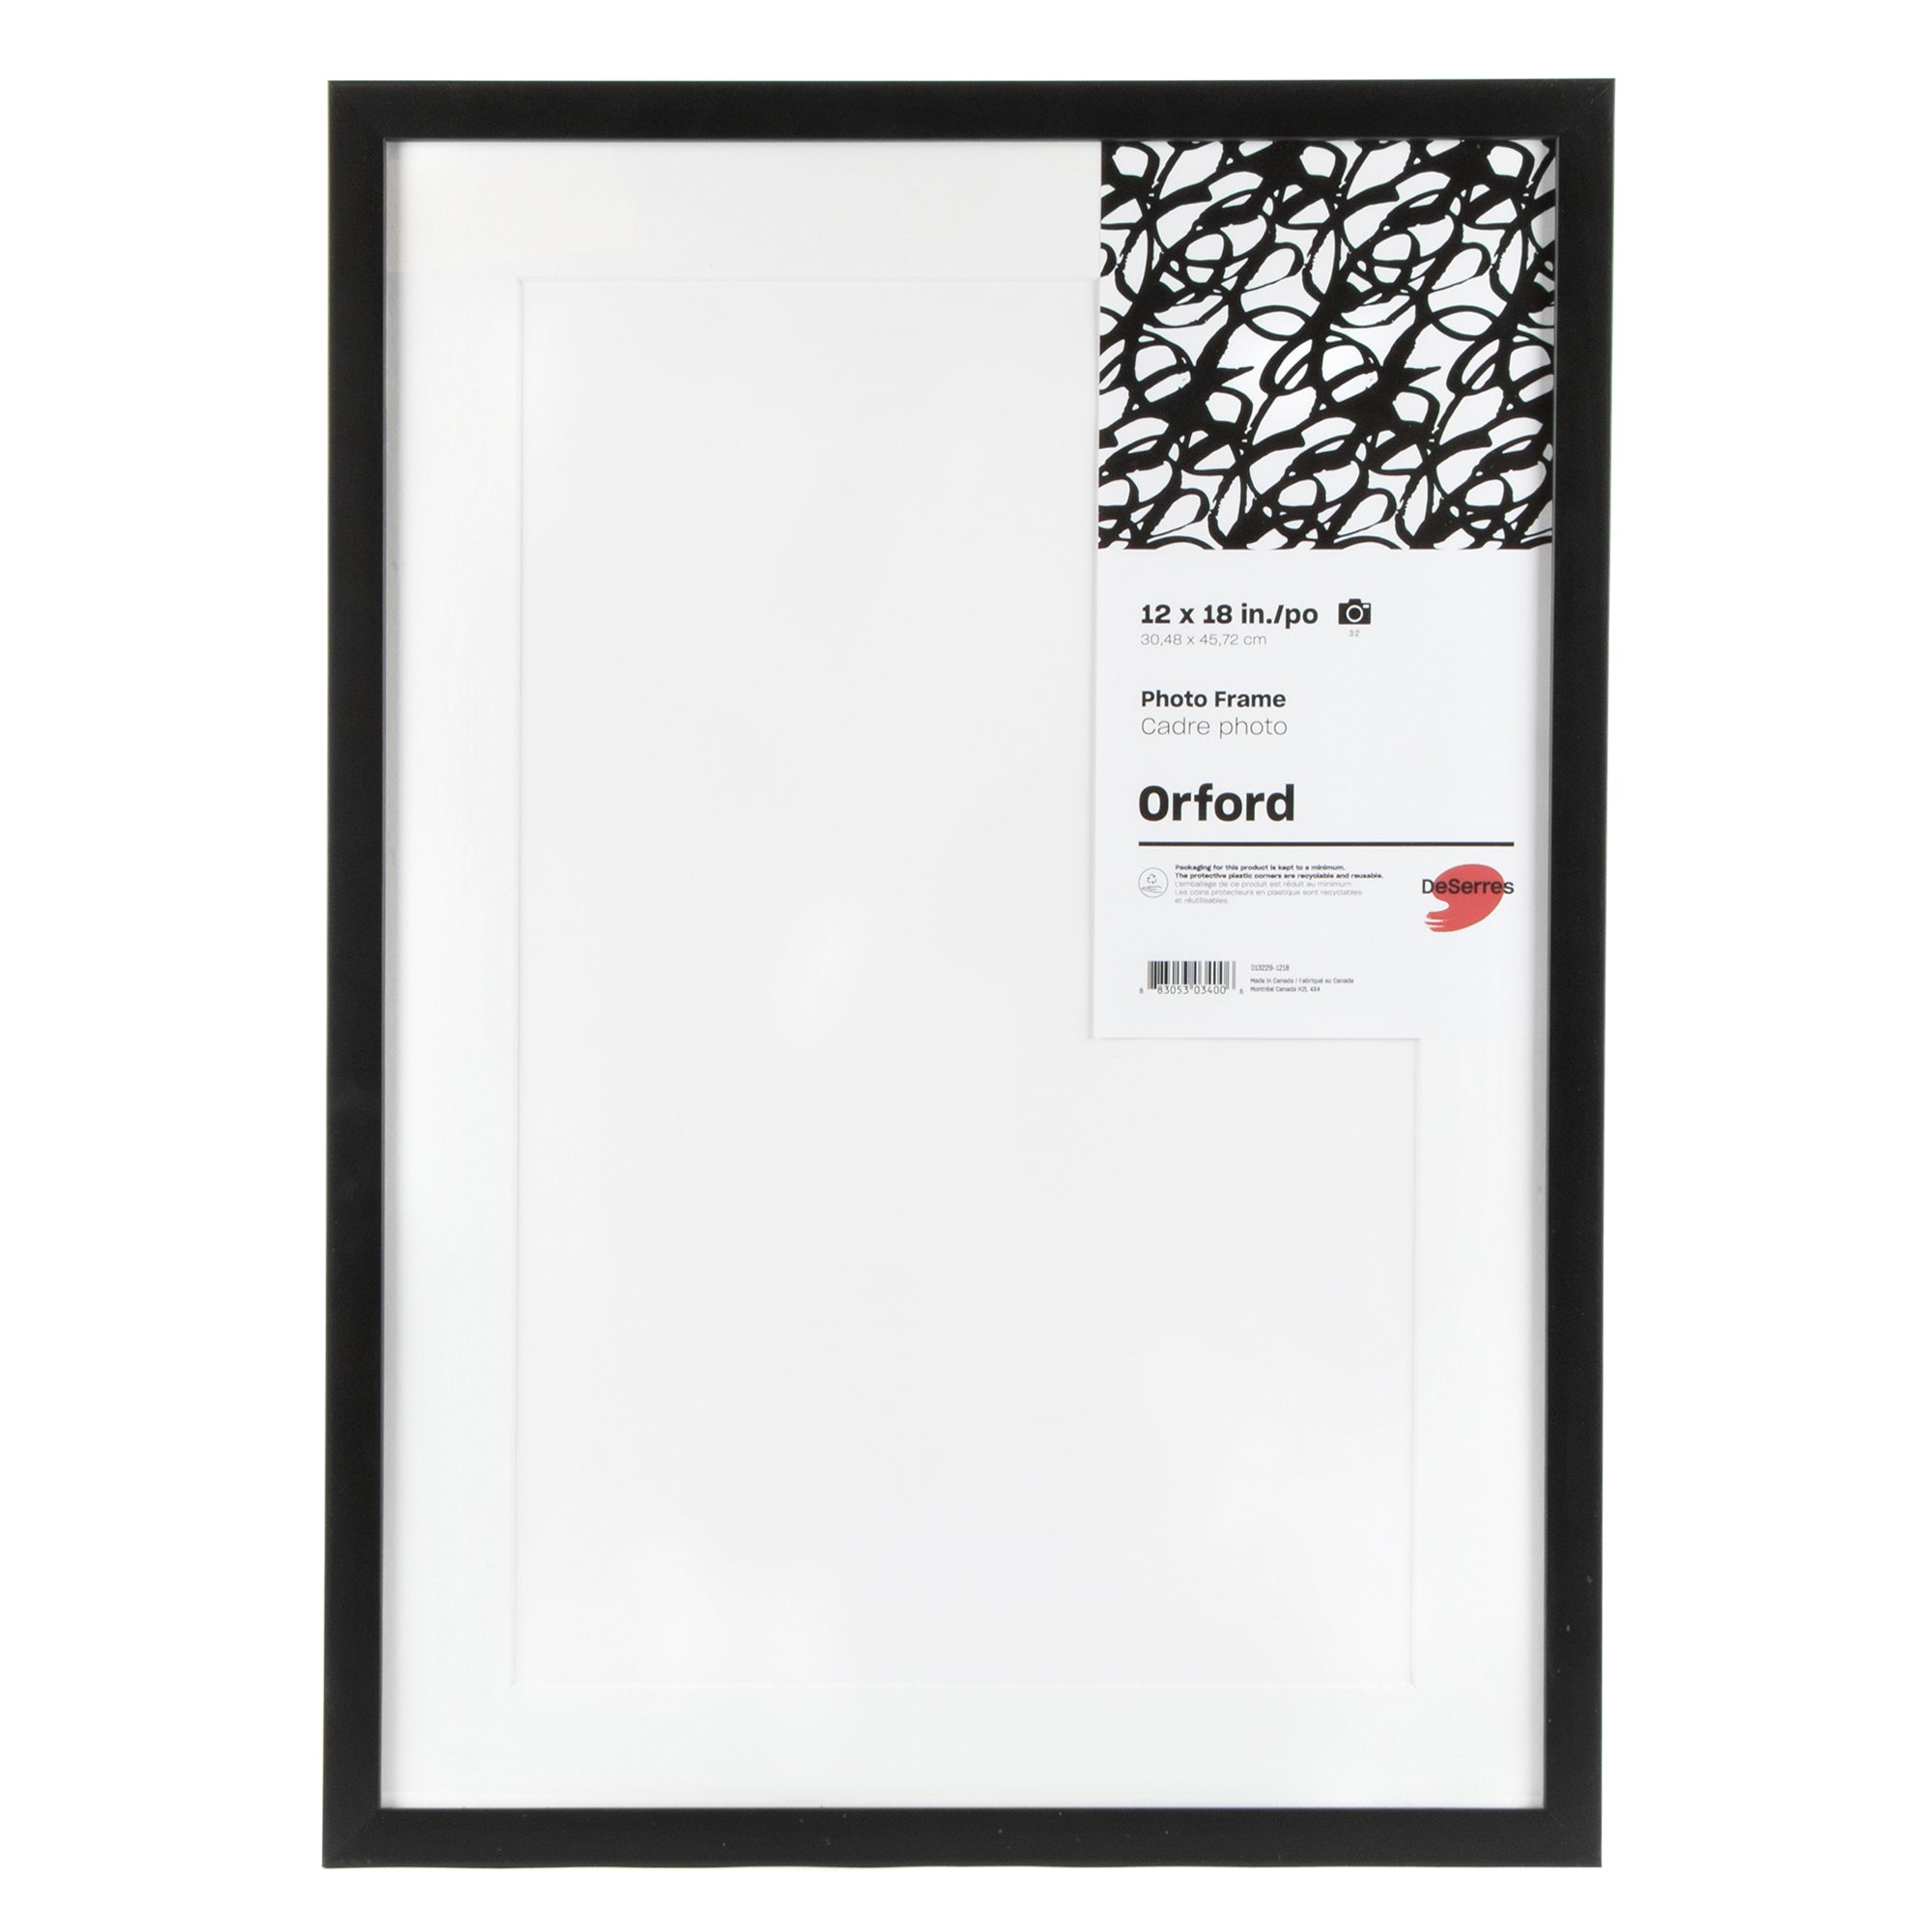 Passe partout format standard Blanc pour cadres et photos - Cadre 50 x 70  cm - Ouverture 29 x 44 cm